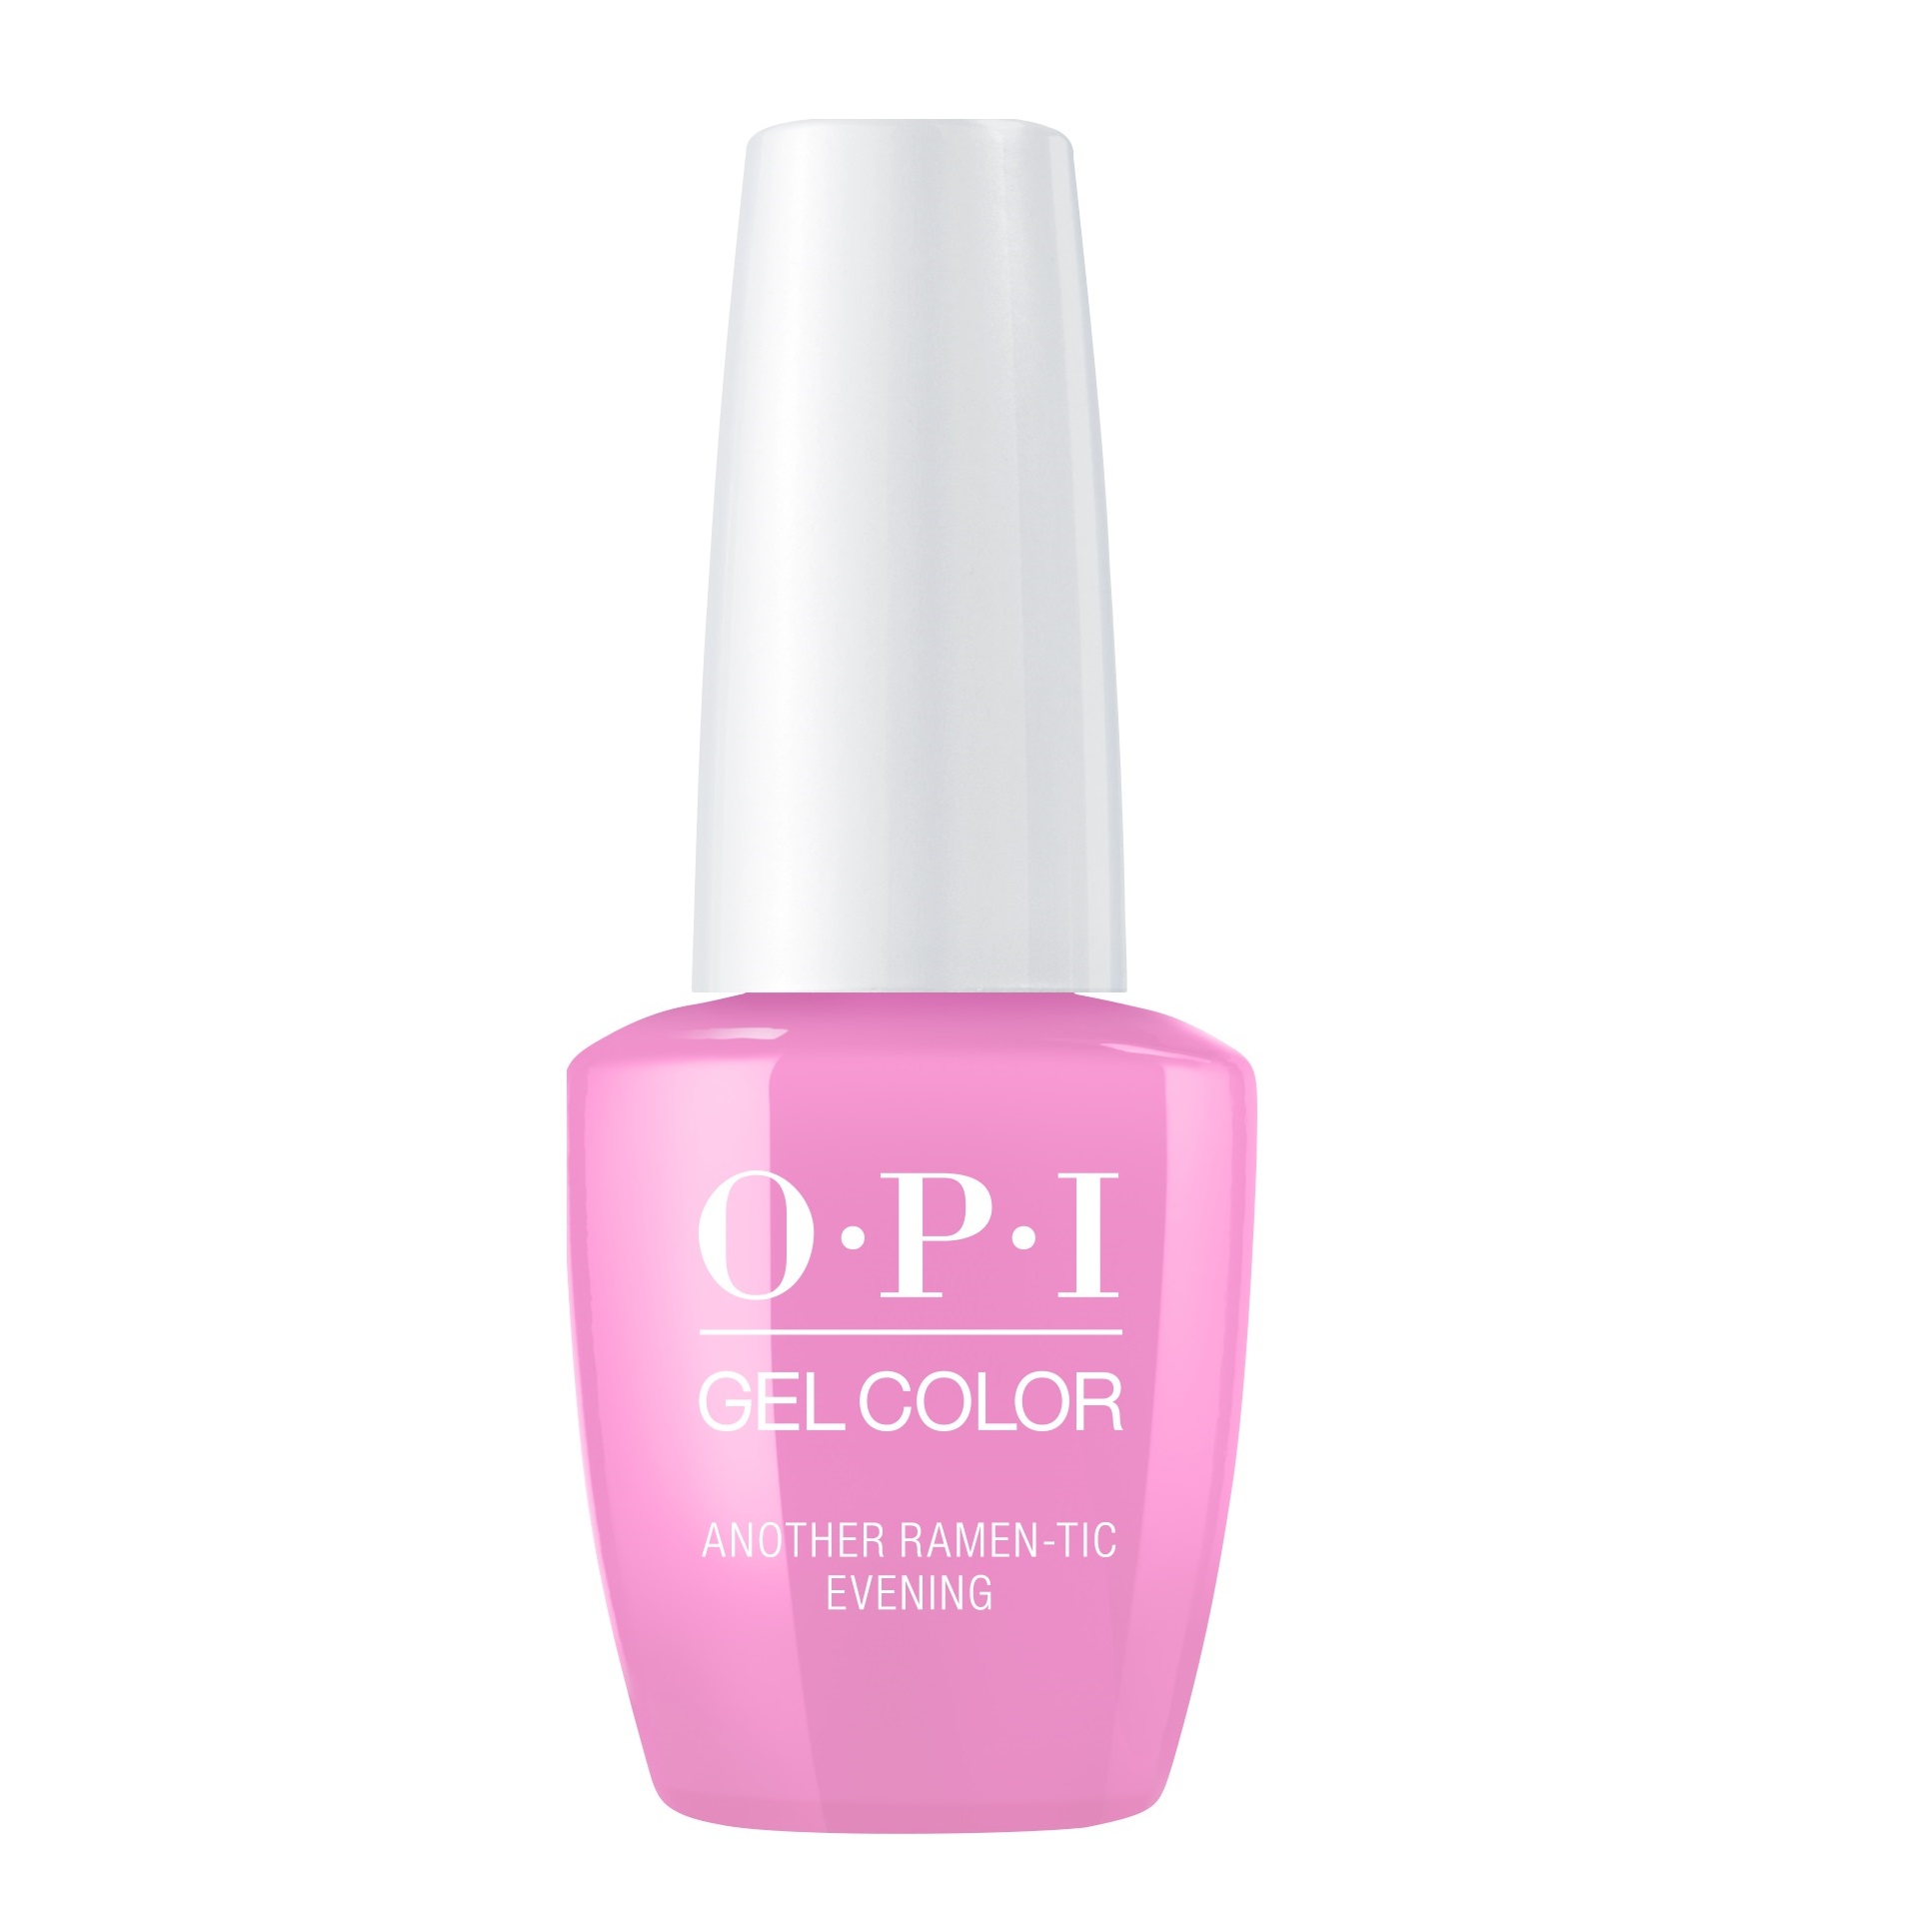 OPI Гель-лак для ногтей / Another Ramentic Evening Gel Color